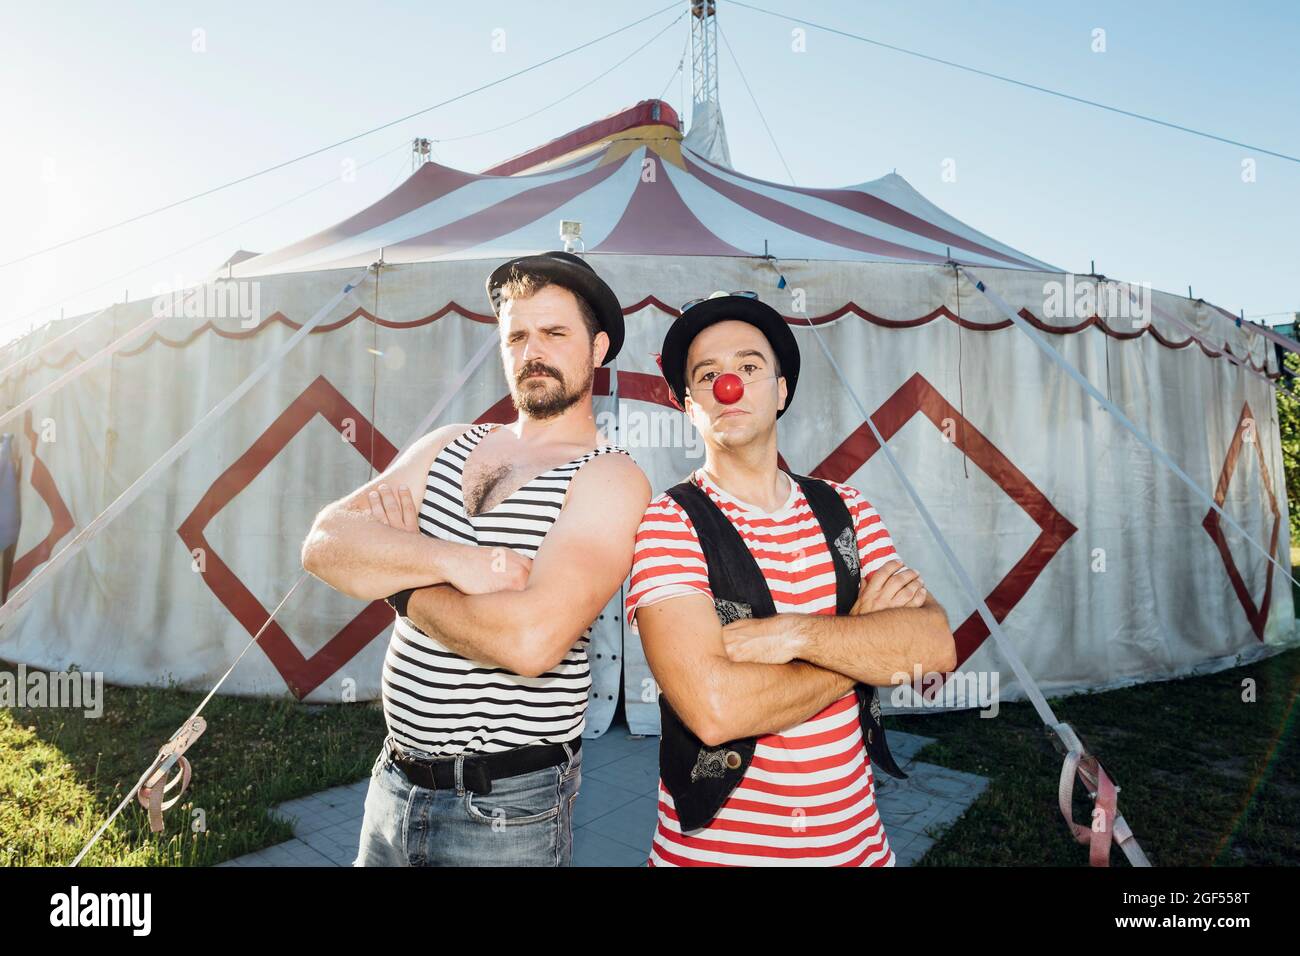 Muskulöser Baukünstler, der mit den vom Clown gekreuzten Armen vor dem Zirkuszelt steht Stockfoto